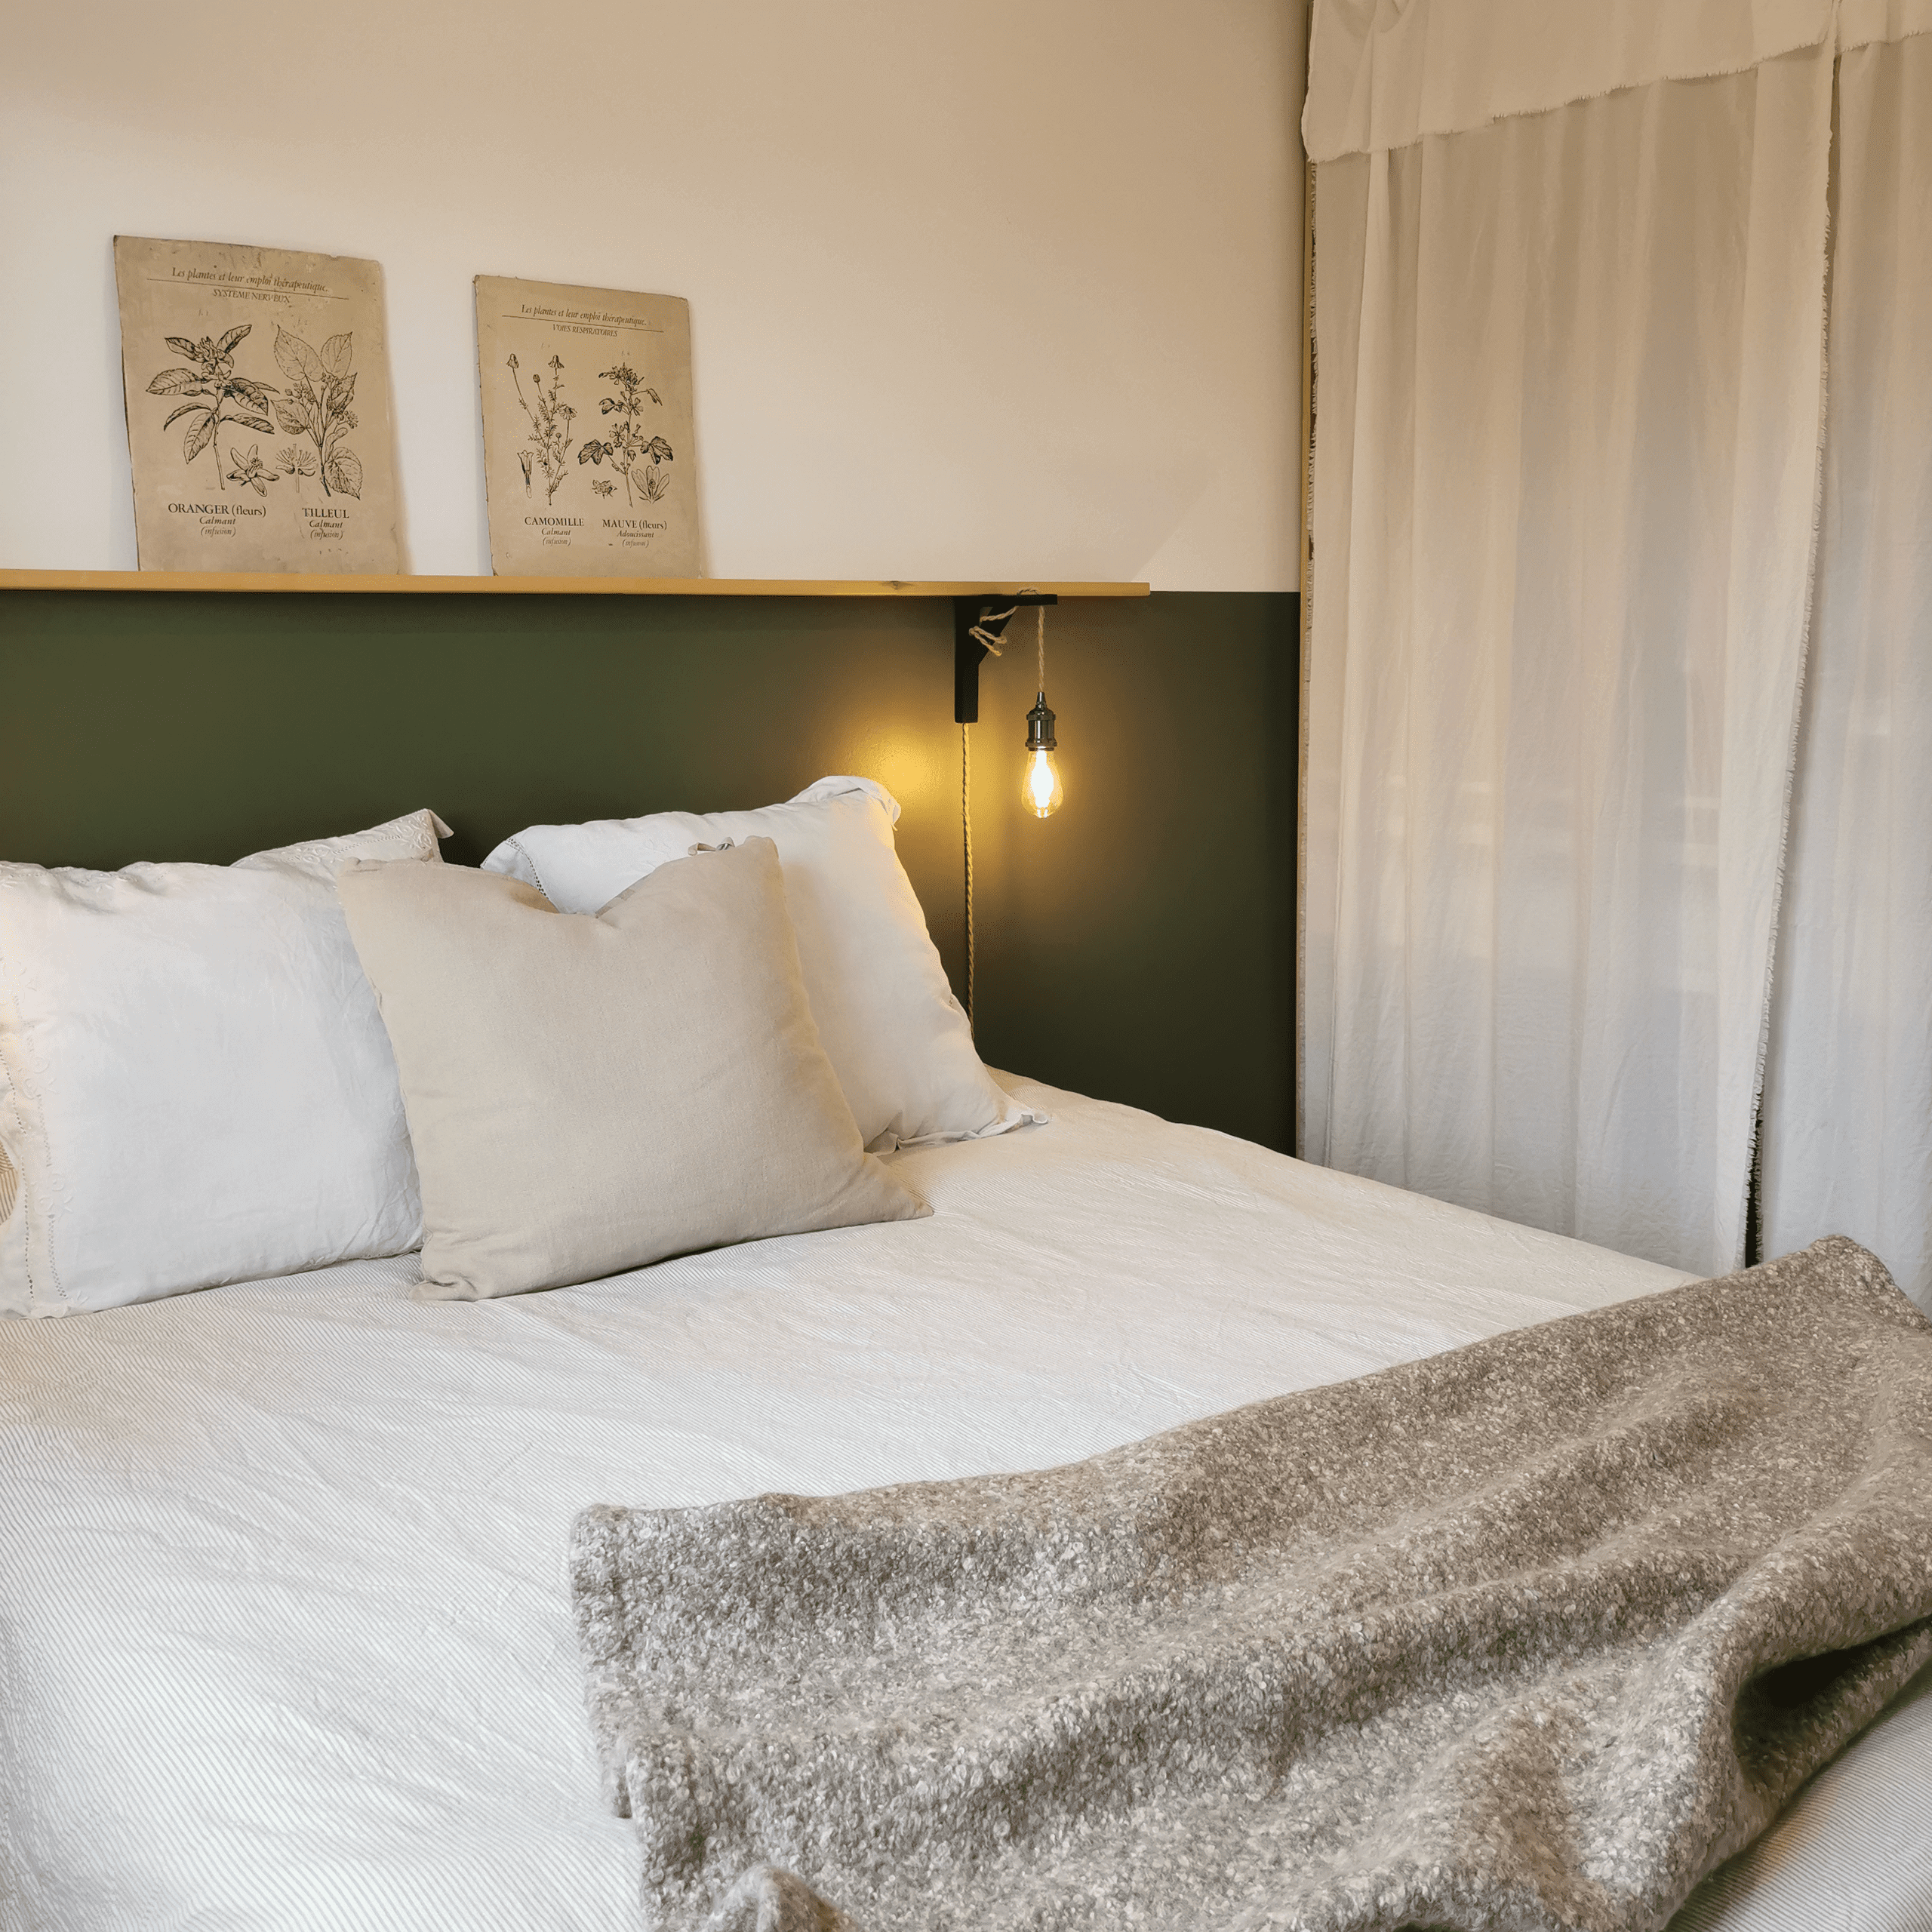 chambre parentale redécorée par dame jeanne décoration le mur au-dessus du lit est peint en vert kaki, sur la droite une lampe de chevet suspendue